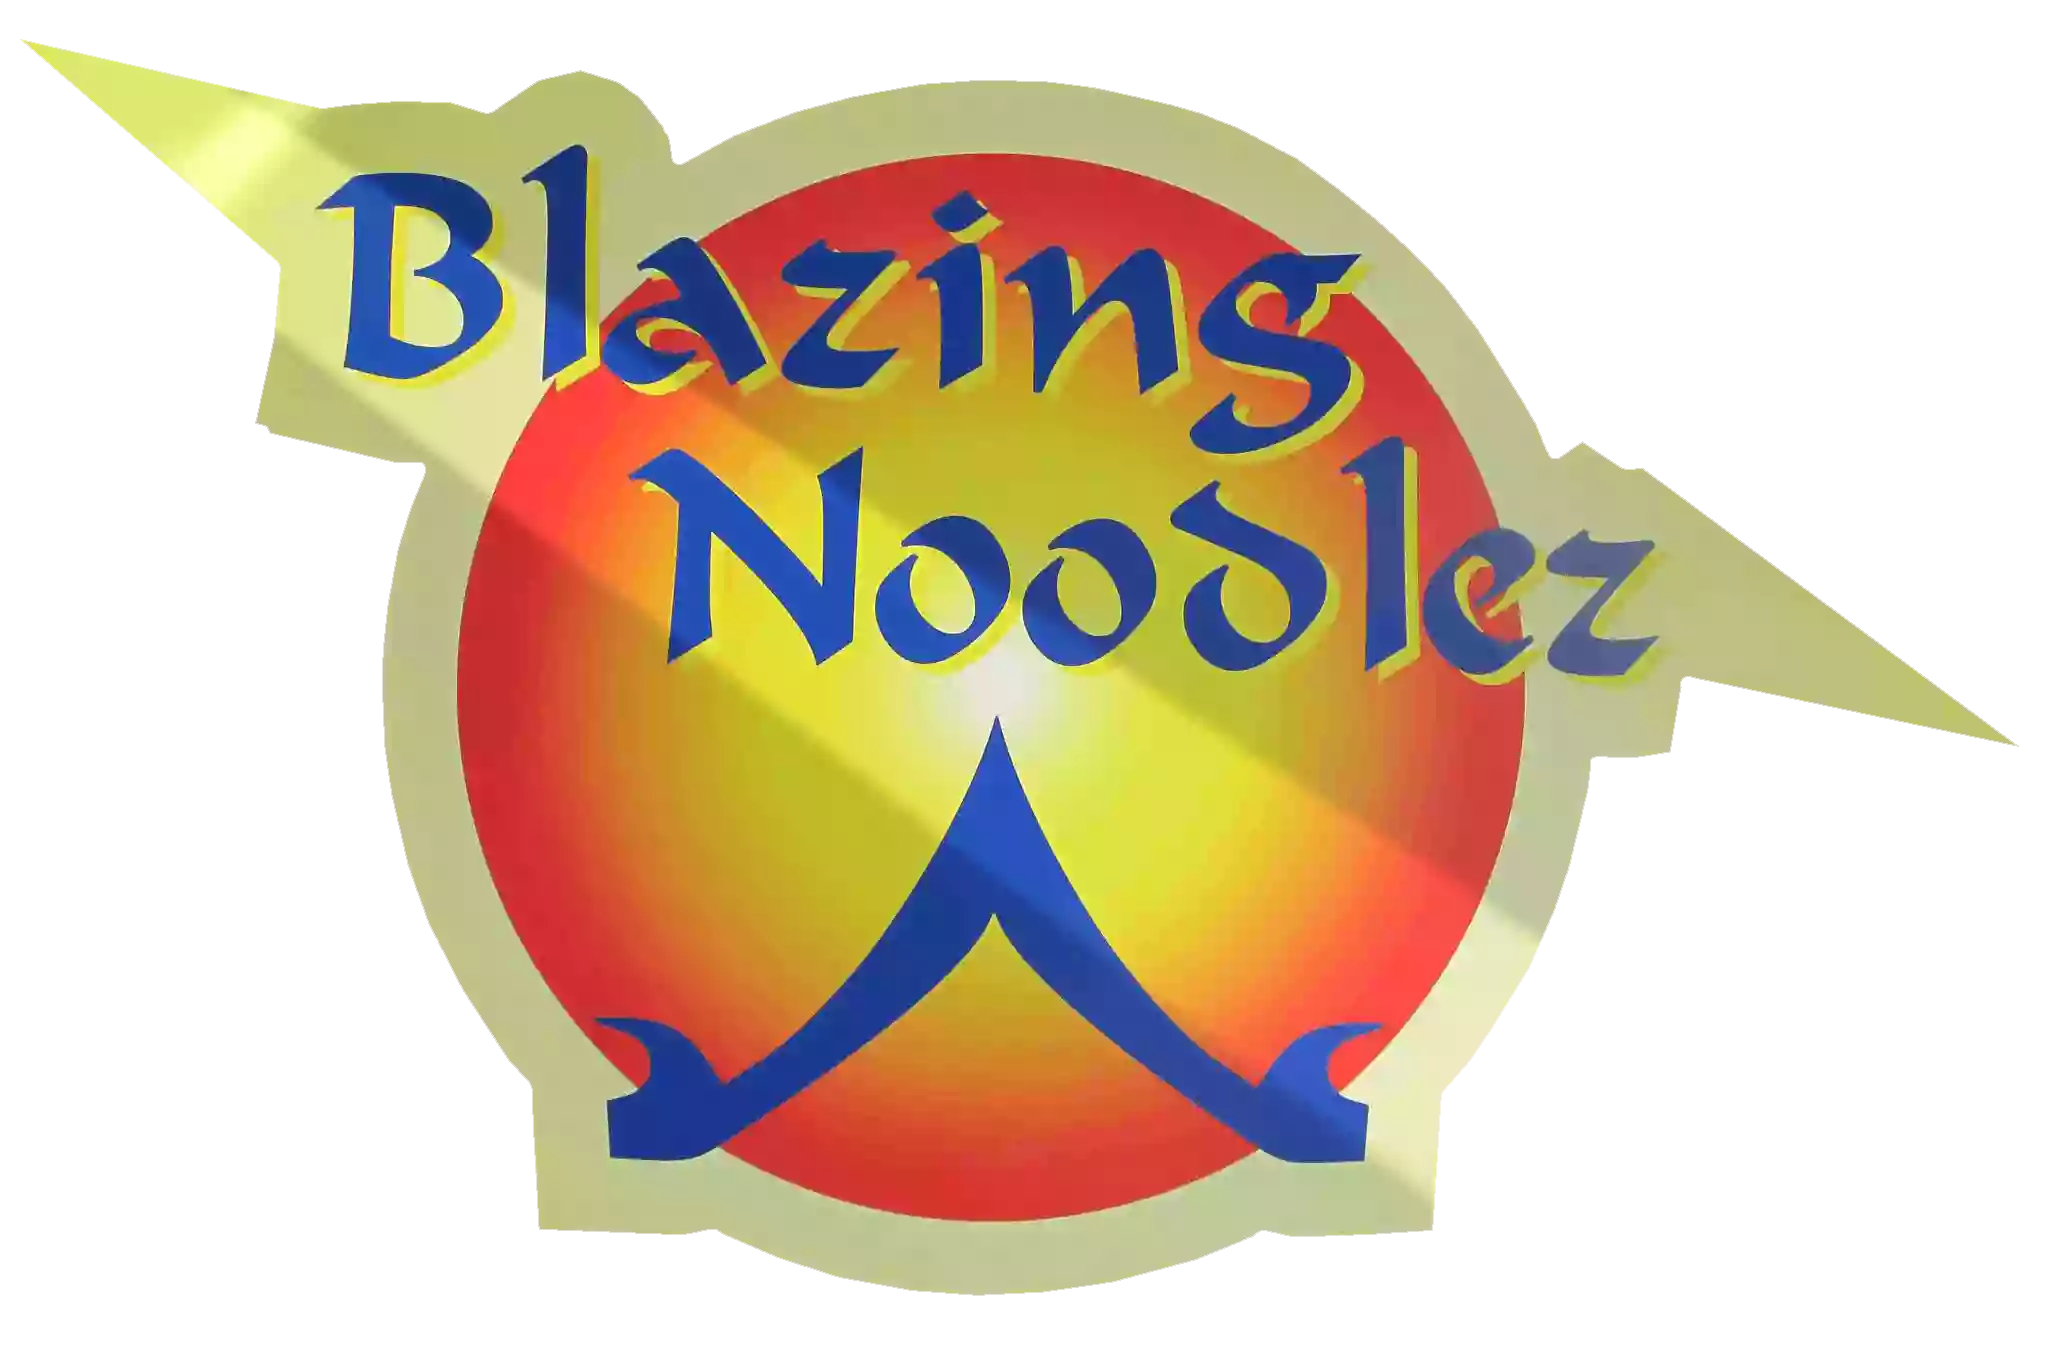 Blazing Noodlez